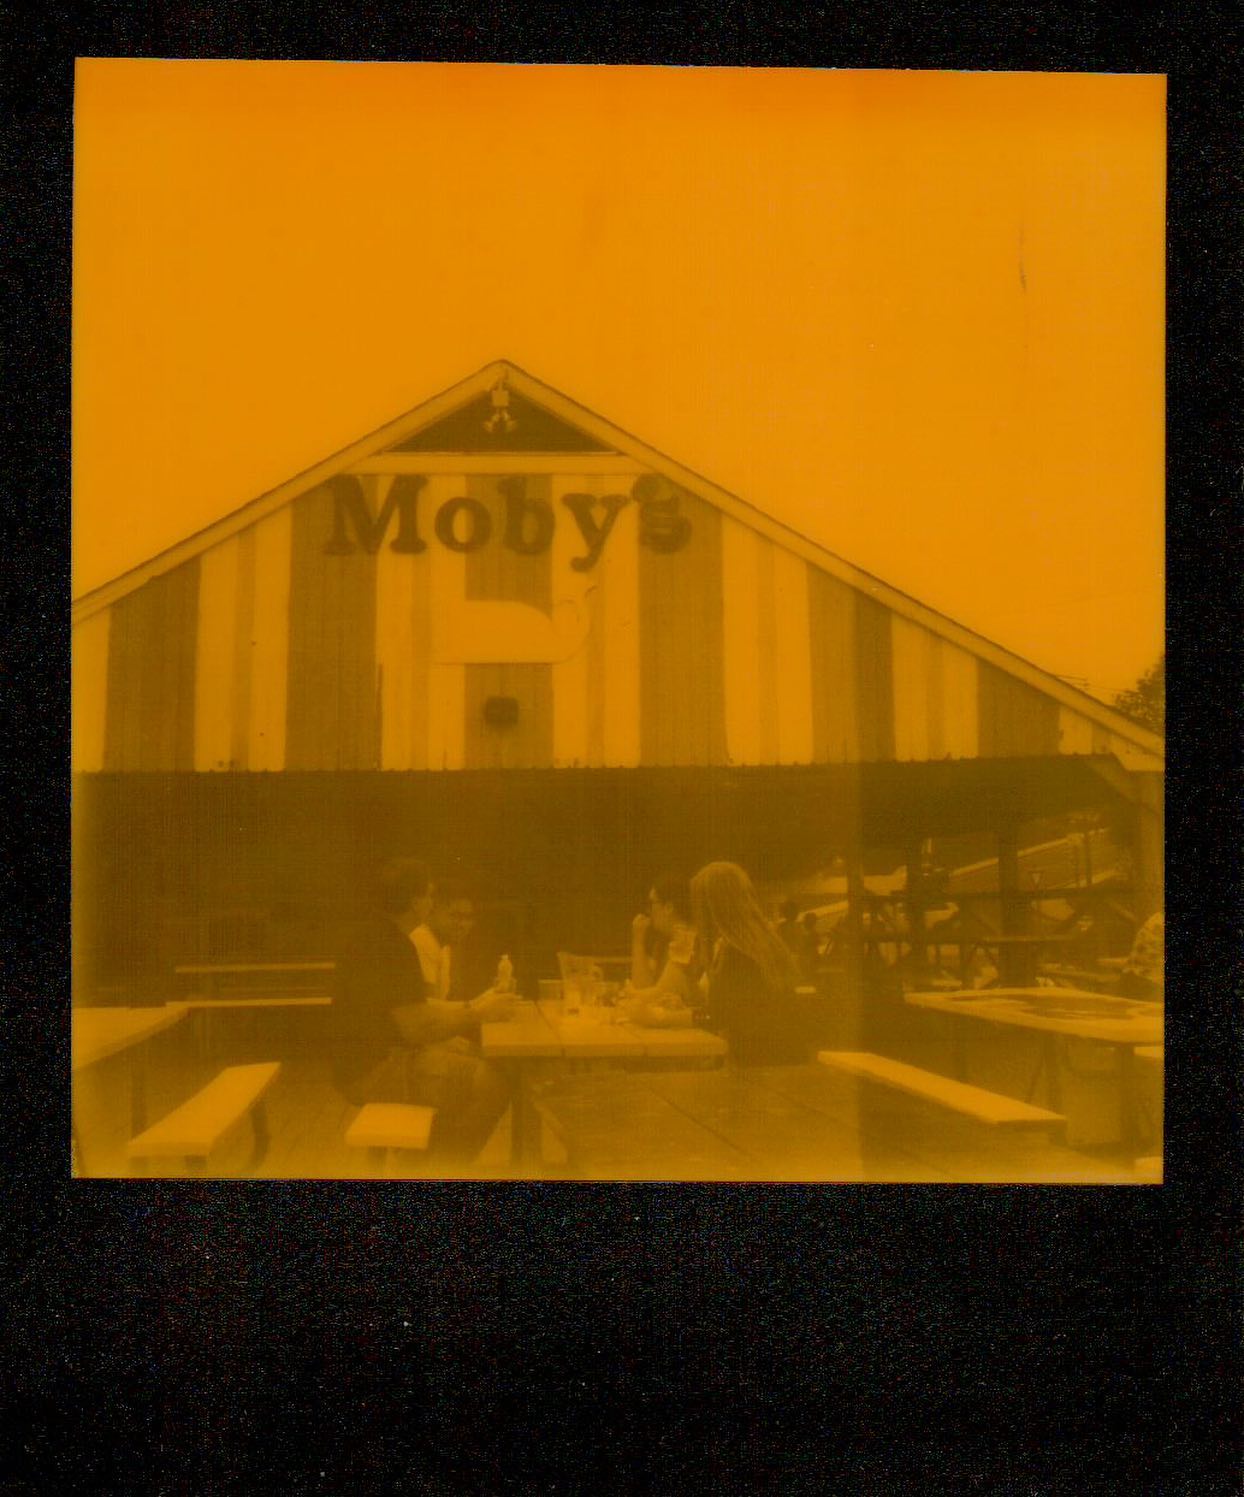 Mobyâs

Probably the best of a pack of Orange & Black duochrome film I shot in the SLR-670. #mintcamera #polaroid #impossibleproject #slr670 #slr670s #film #filmphotography